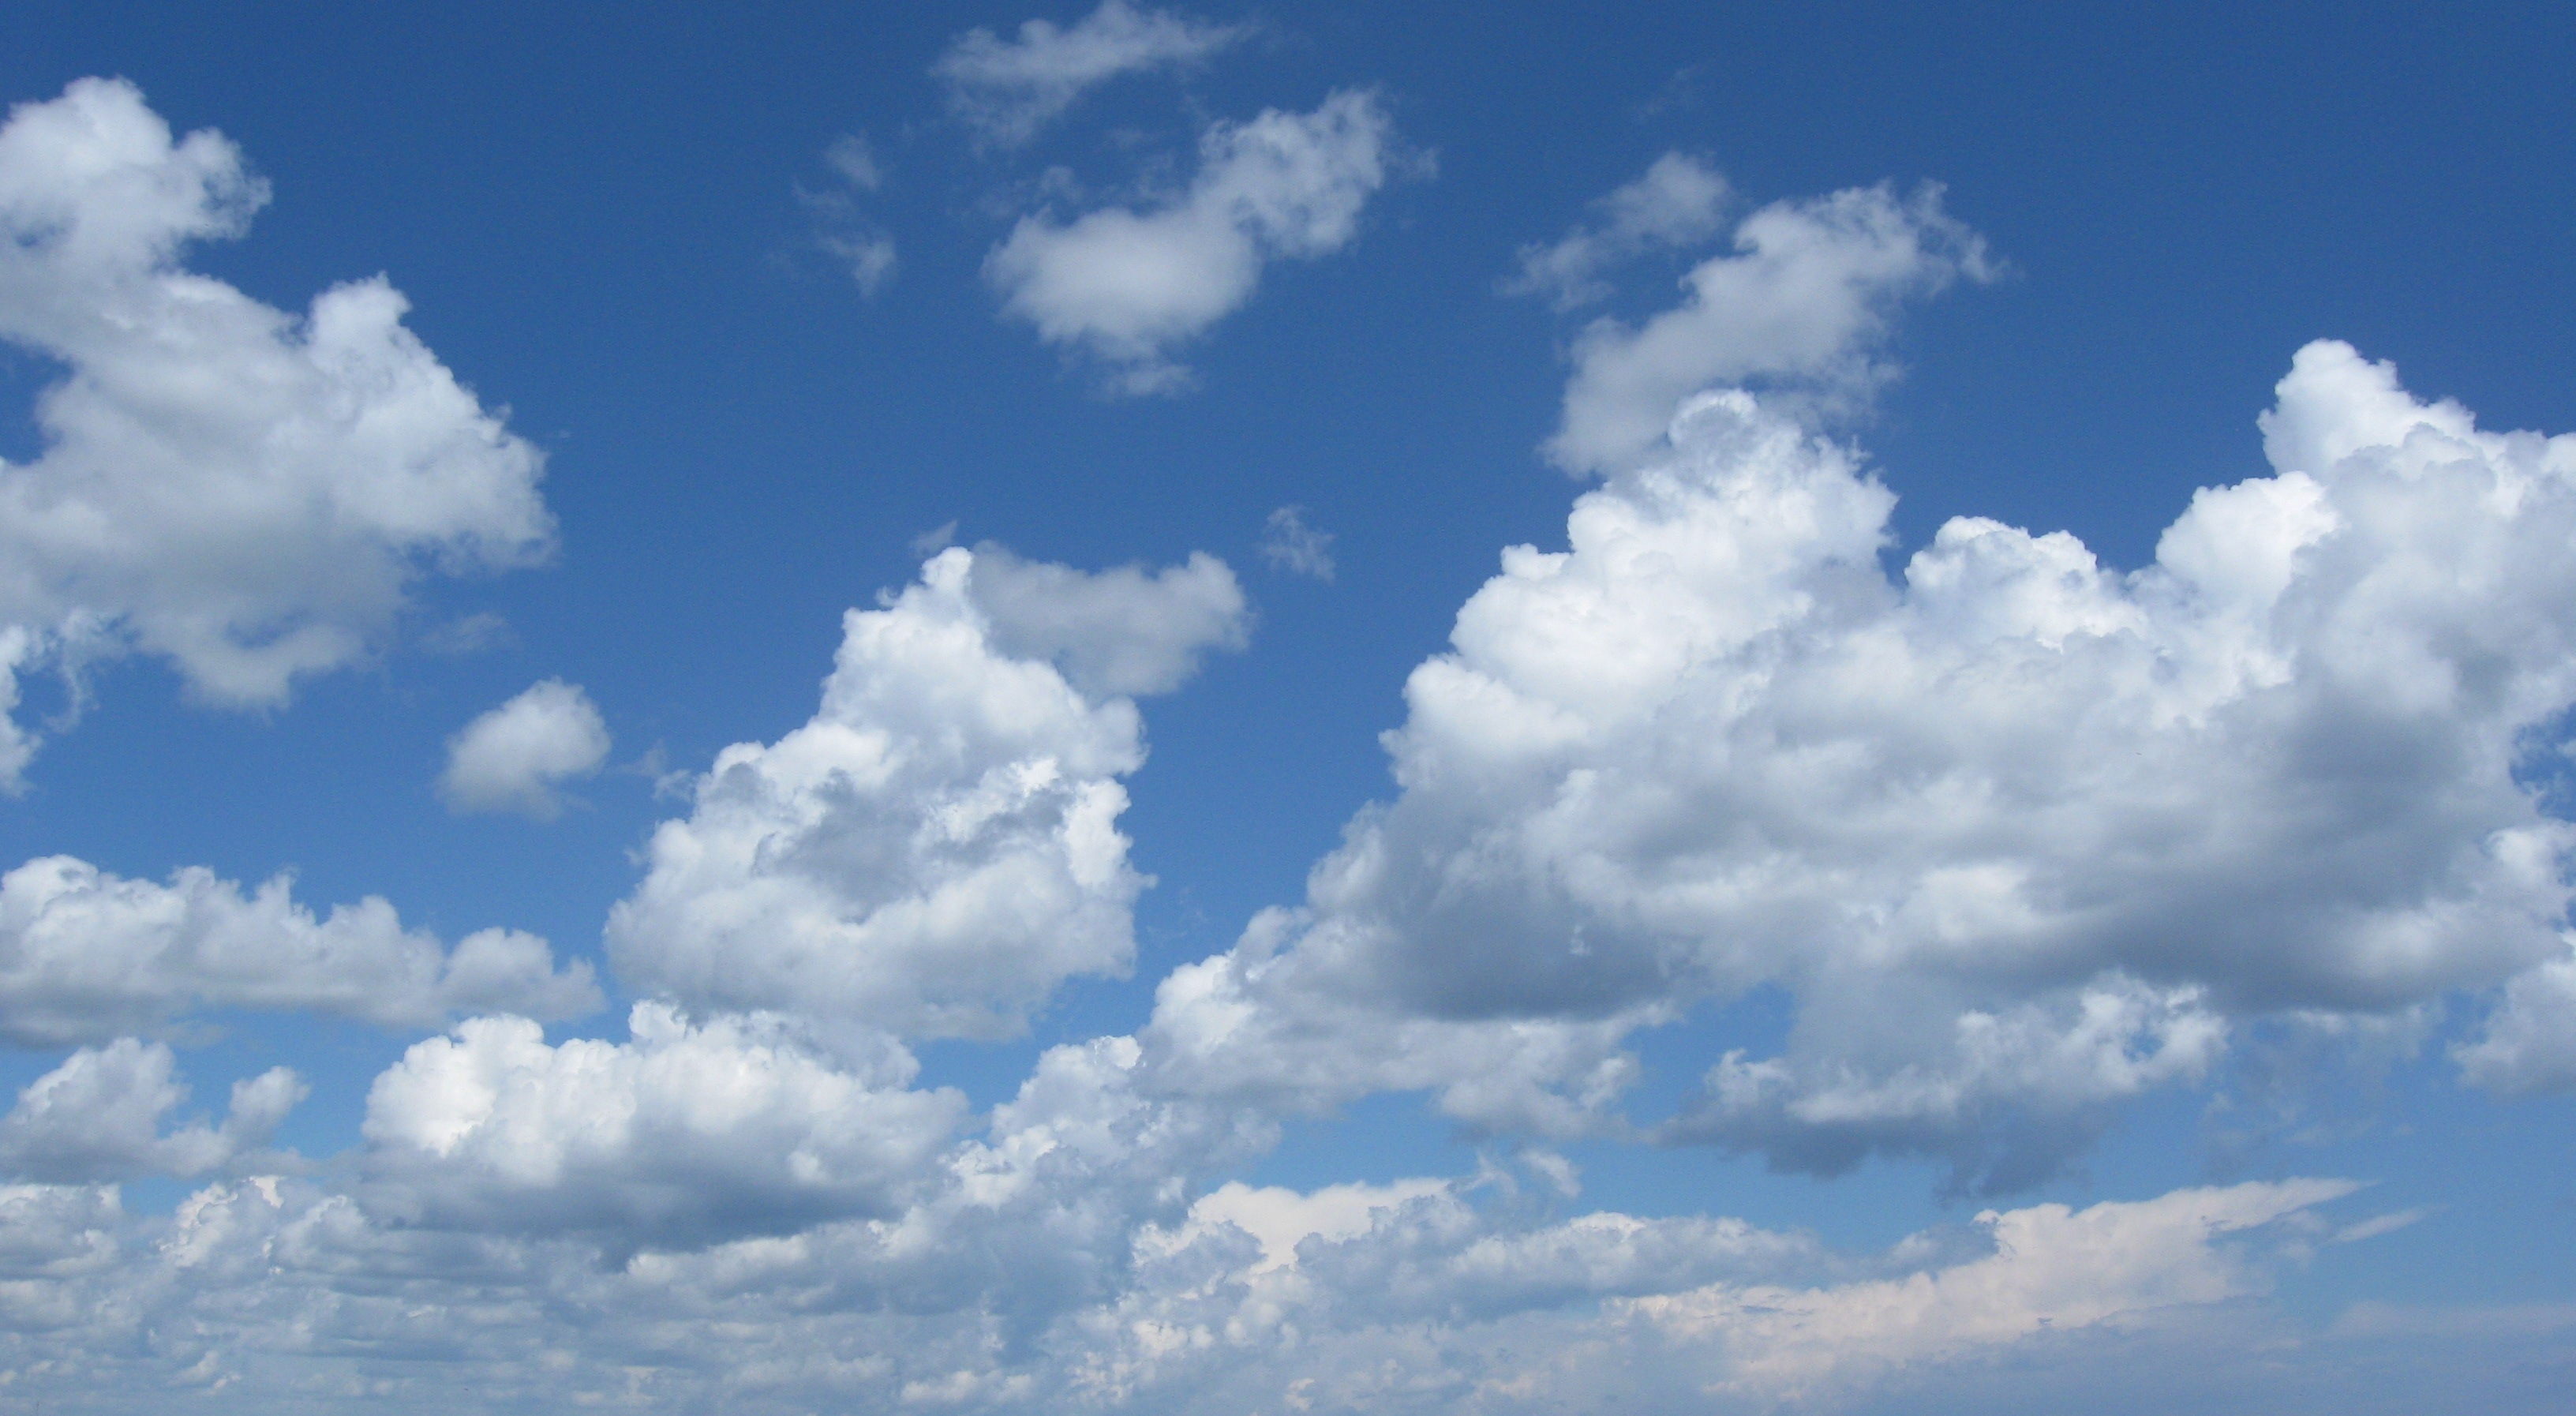 awan name wallpaper,cielo,nube,tiempo de día,azul,cúmulo